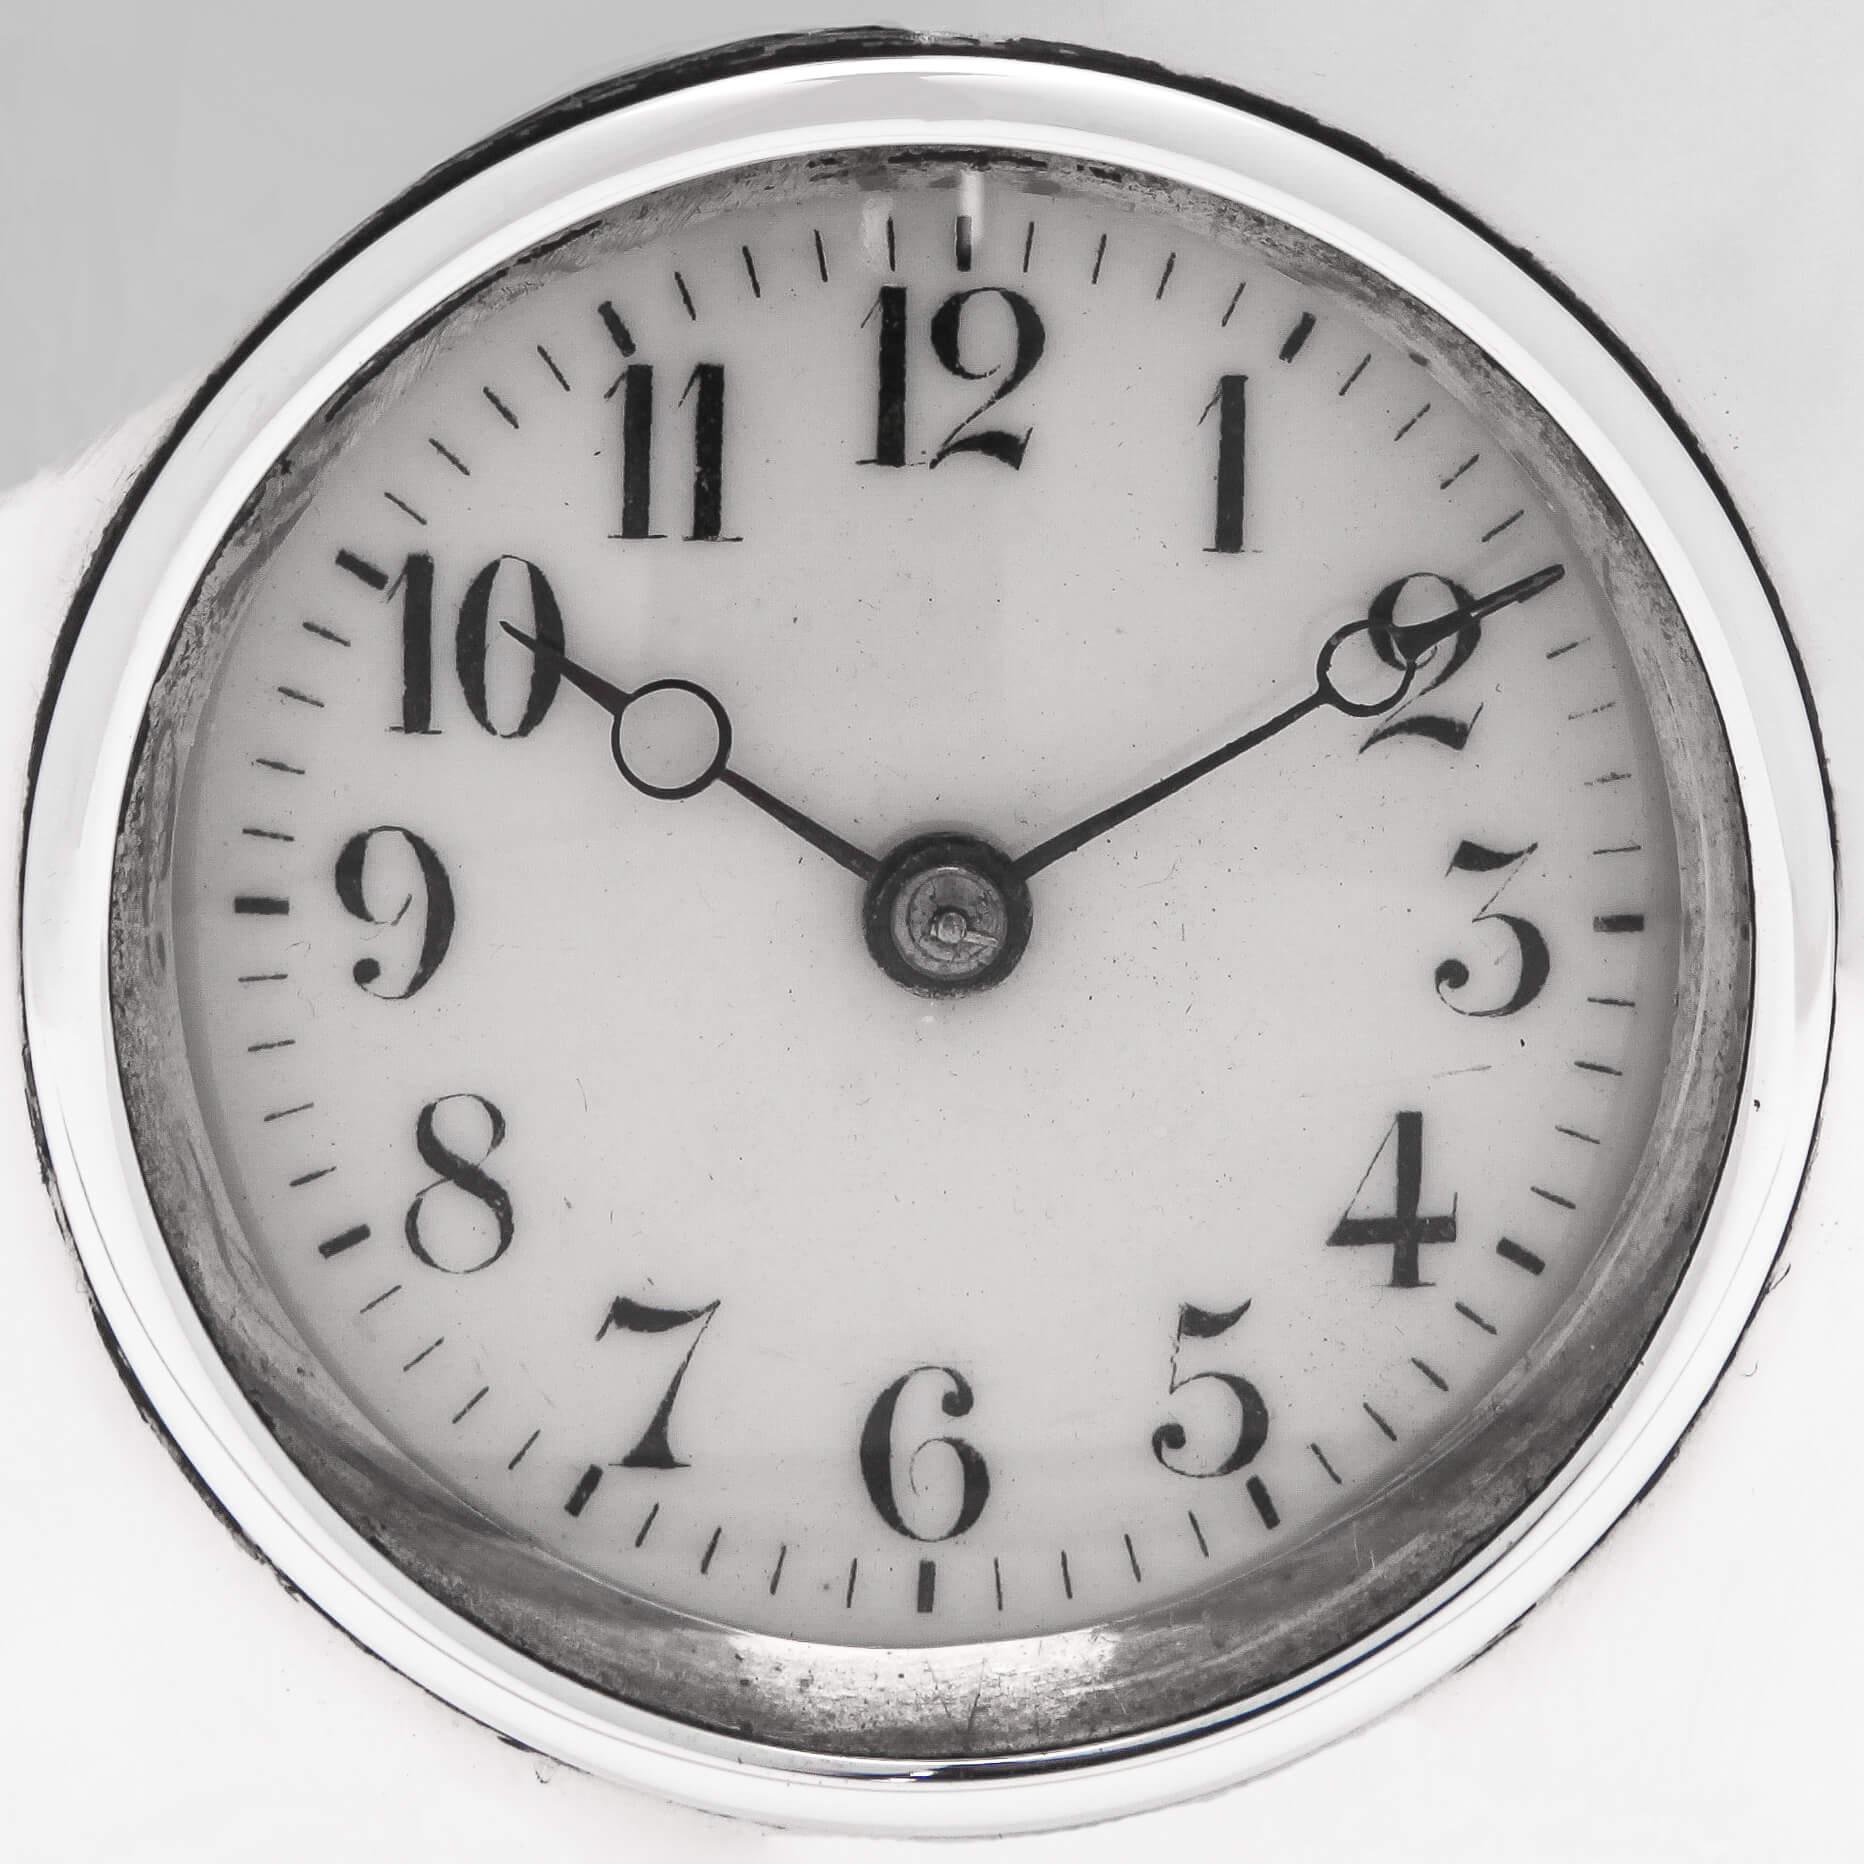 Poinçonnée à Londres en 1899 par Goldsmiths & Silversmiths Co, cette rare et précieuse horloge à répétition en argent sterling de l'époque victorienne a un corps uni et un cadran émaillé. Conçue pour être utilisée près du lit la nuit, l'horloge